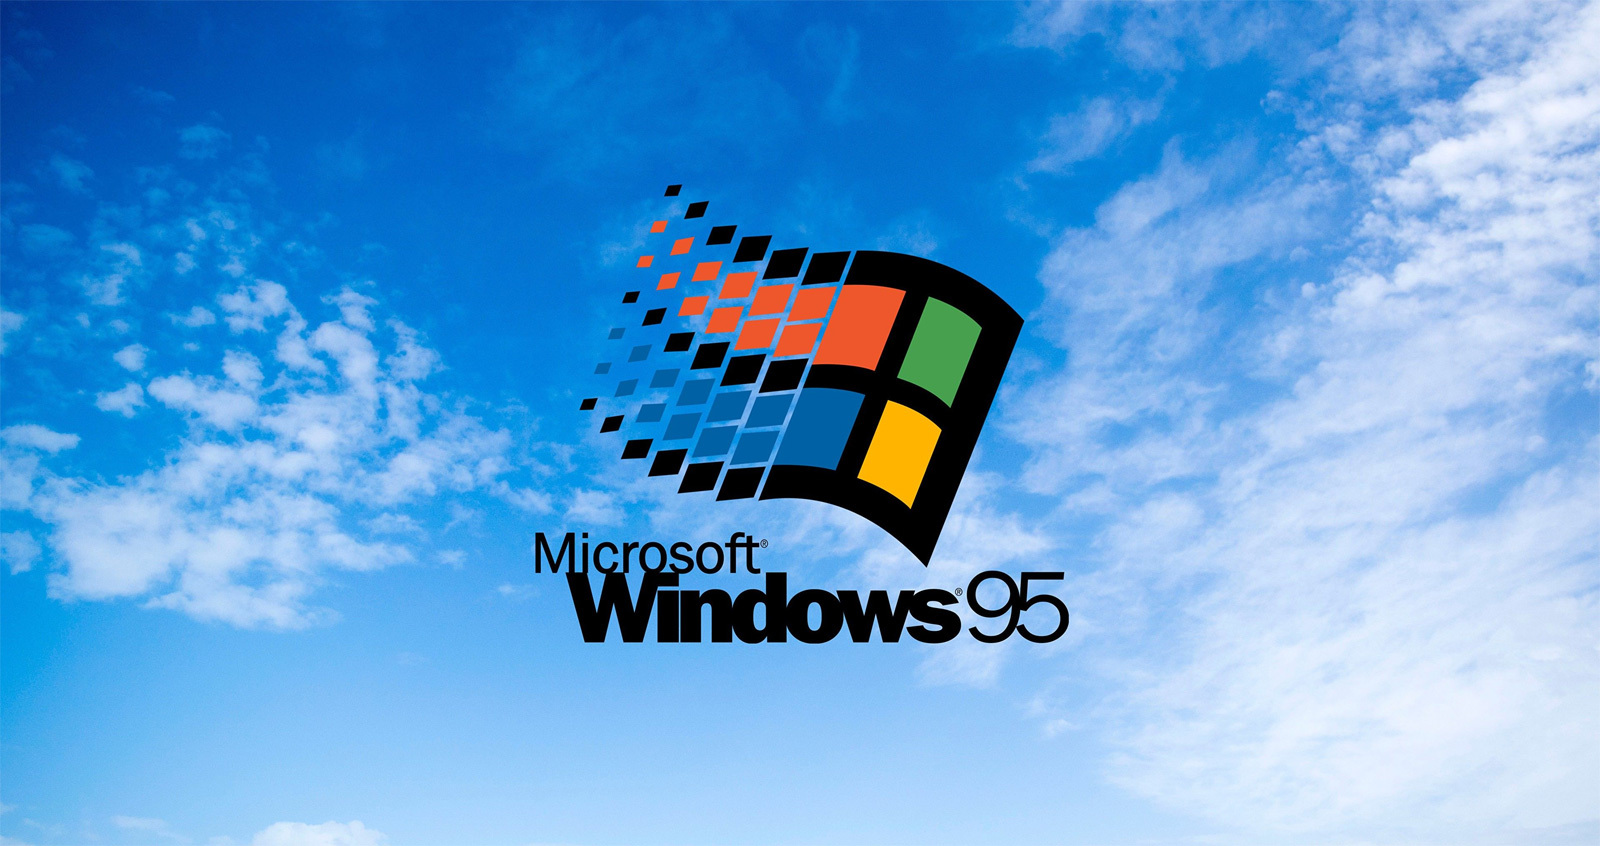    20 :        Windows 95